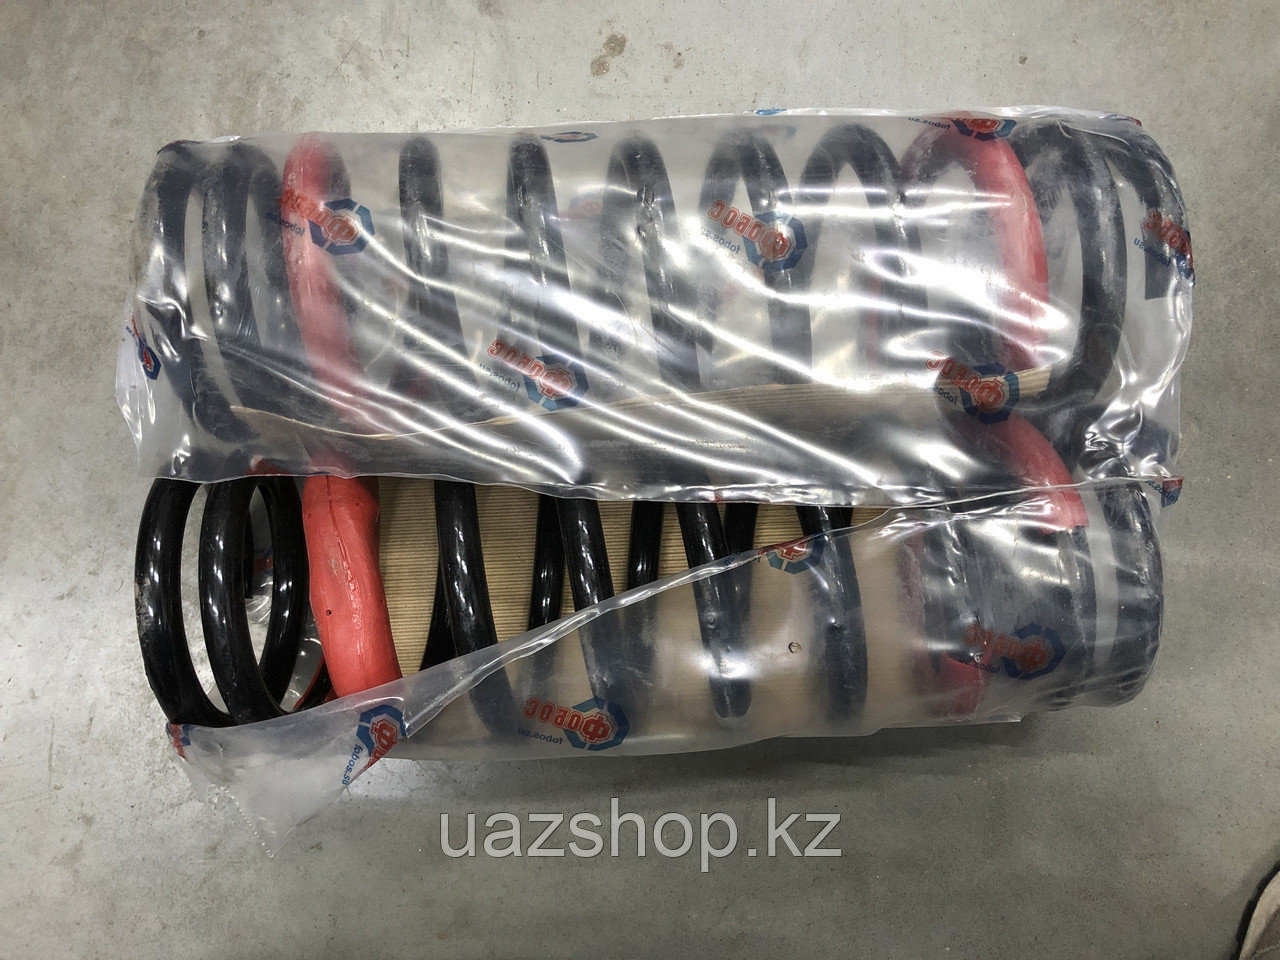 Комплект передних пружин для автомобилей УАЗ, фото 1